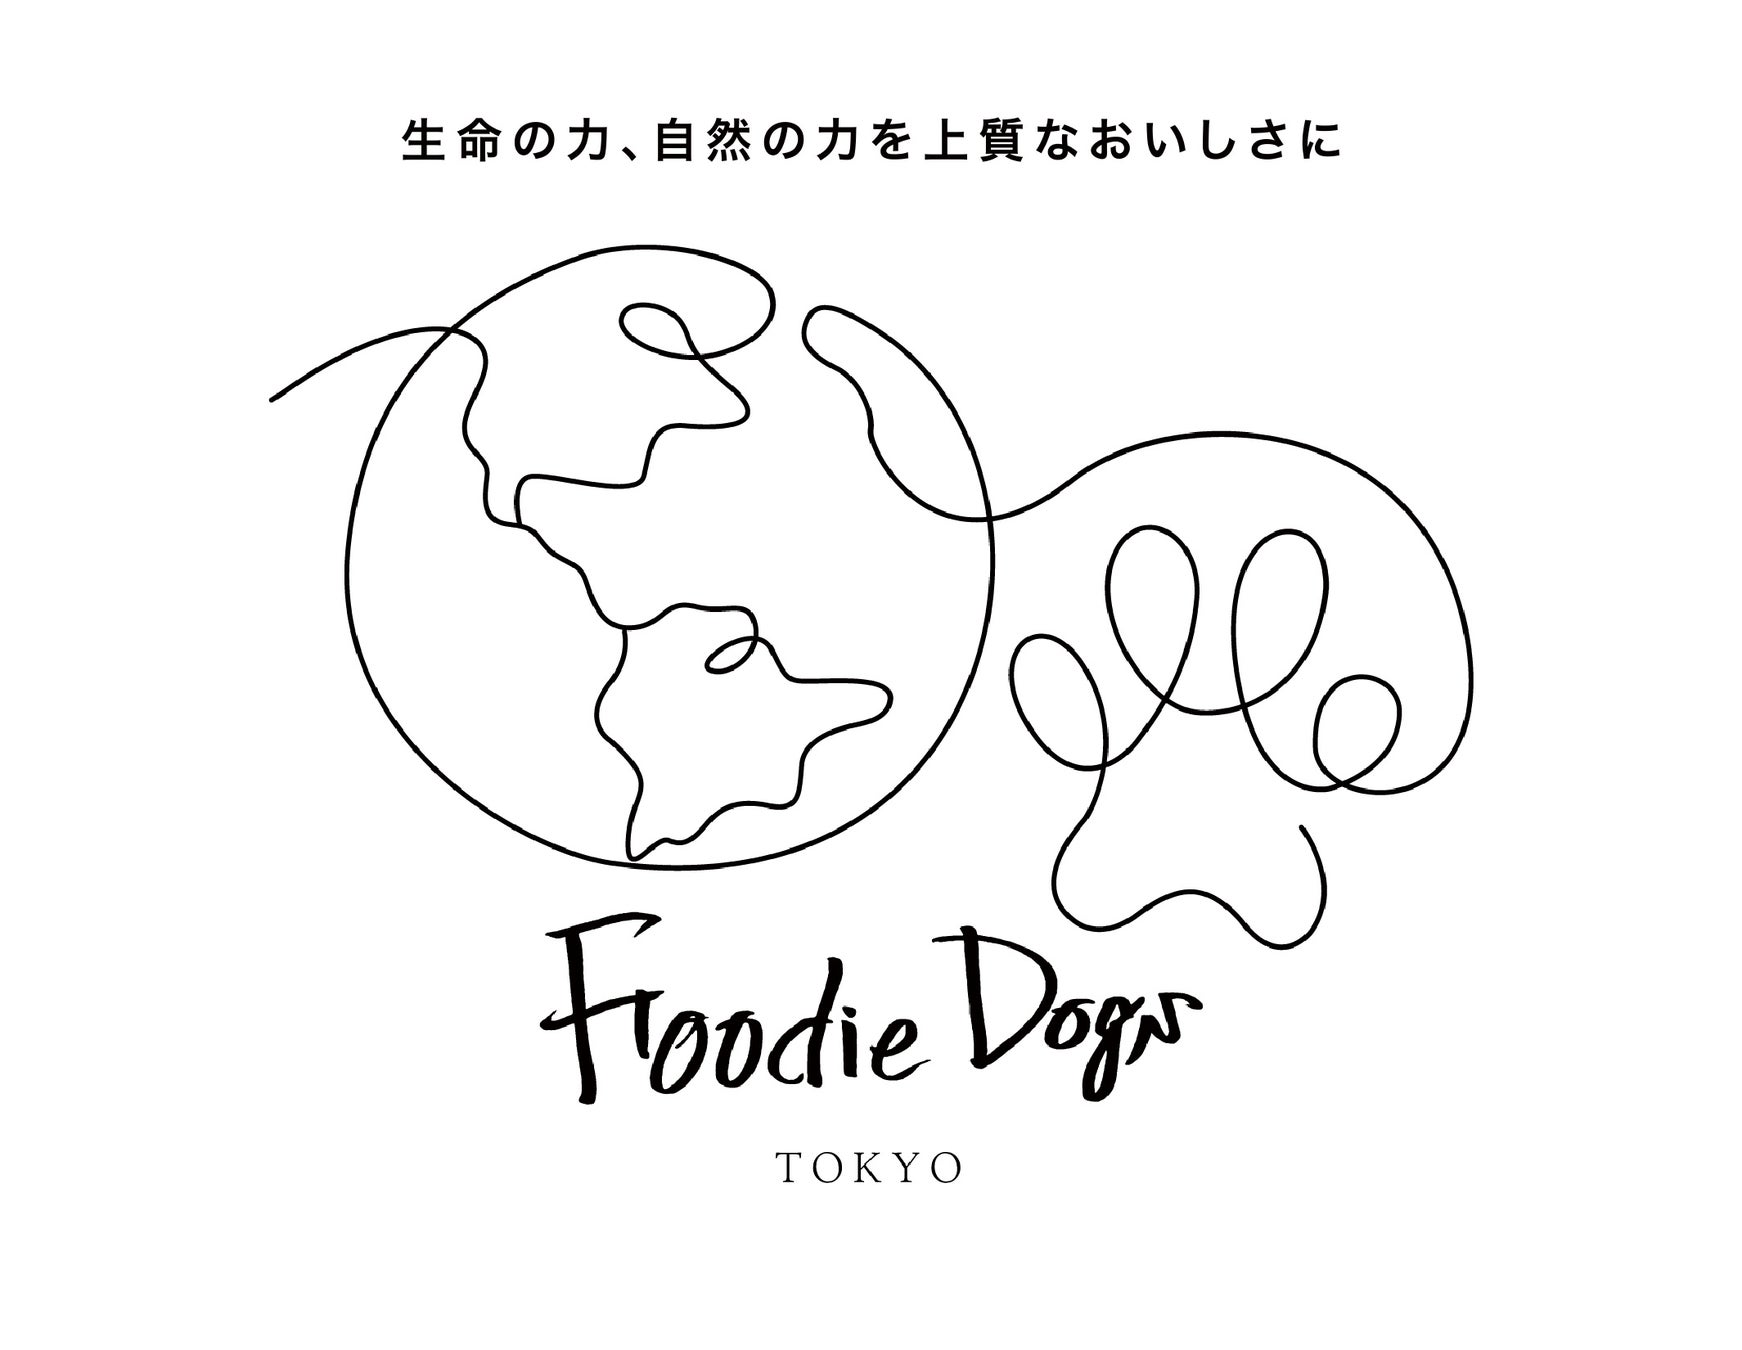 プレミアムドッグフードを展開するブランドFoodie Dogs TOKYO＿飼い主さんの洋服をワンちゃんの洋服にアップサイクルするサービス3W UPCYCLINGを12月16日より開始のサブ画像7